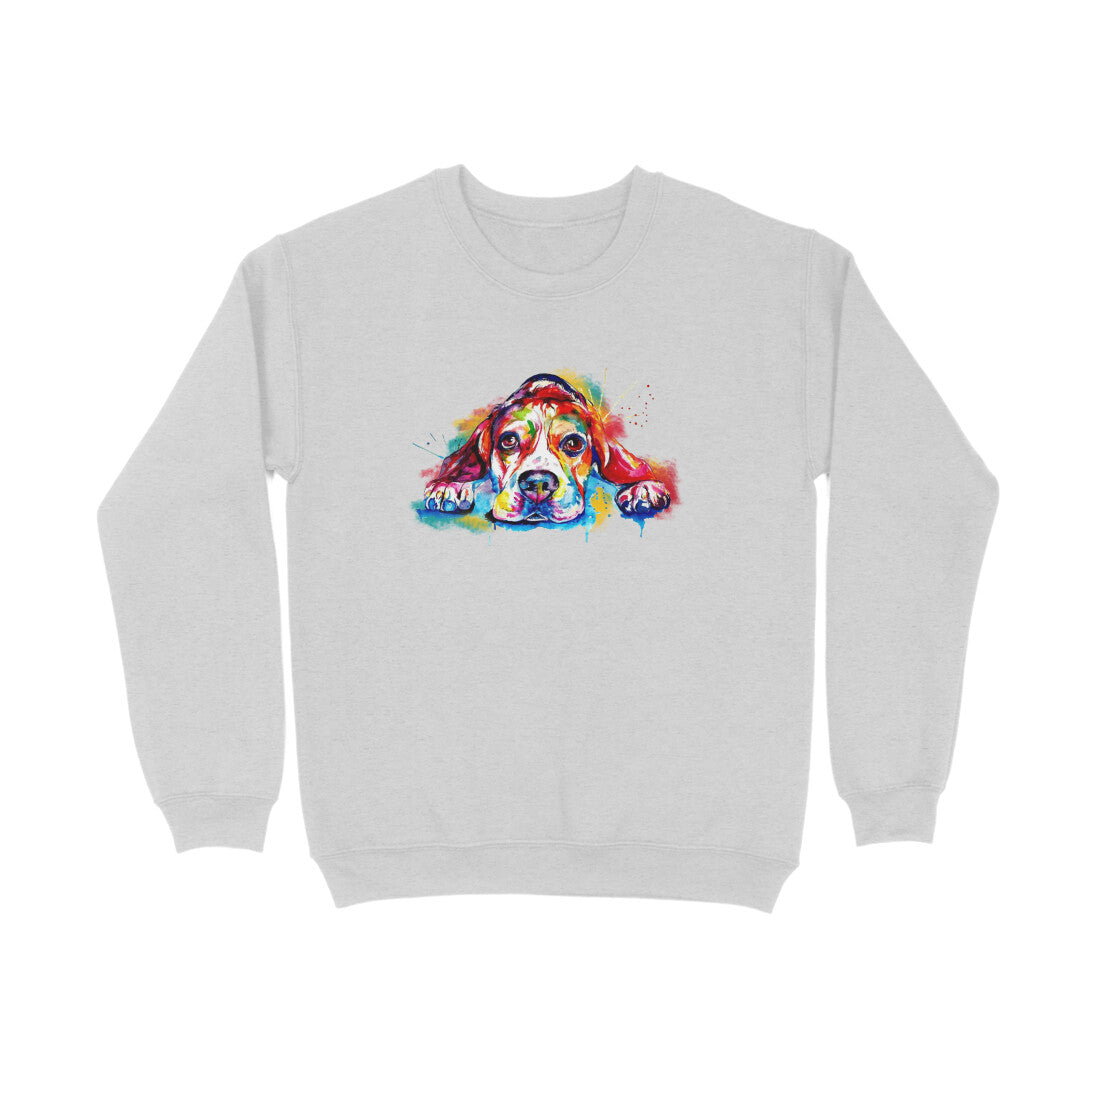 Stepevoli Clothing - Sweatshirt (Unisex) - Droopy Dog Eyes (8 Colours)